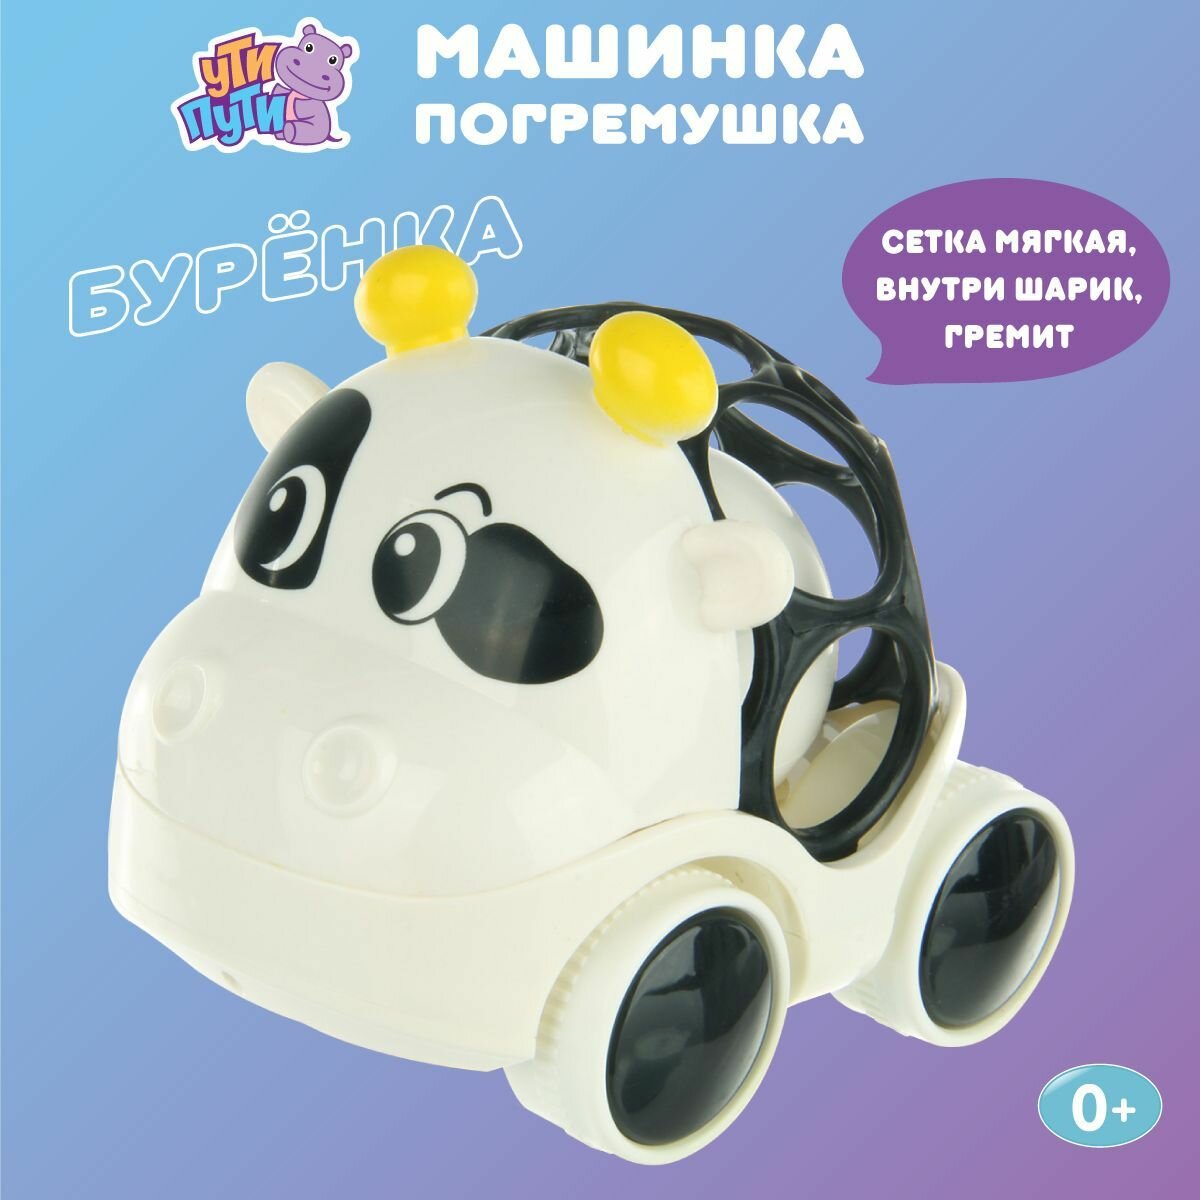 Детская развивающая машинка погремушка "Буренка", Ути Пути / Игрушечный транспорт для малышей